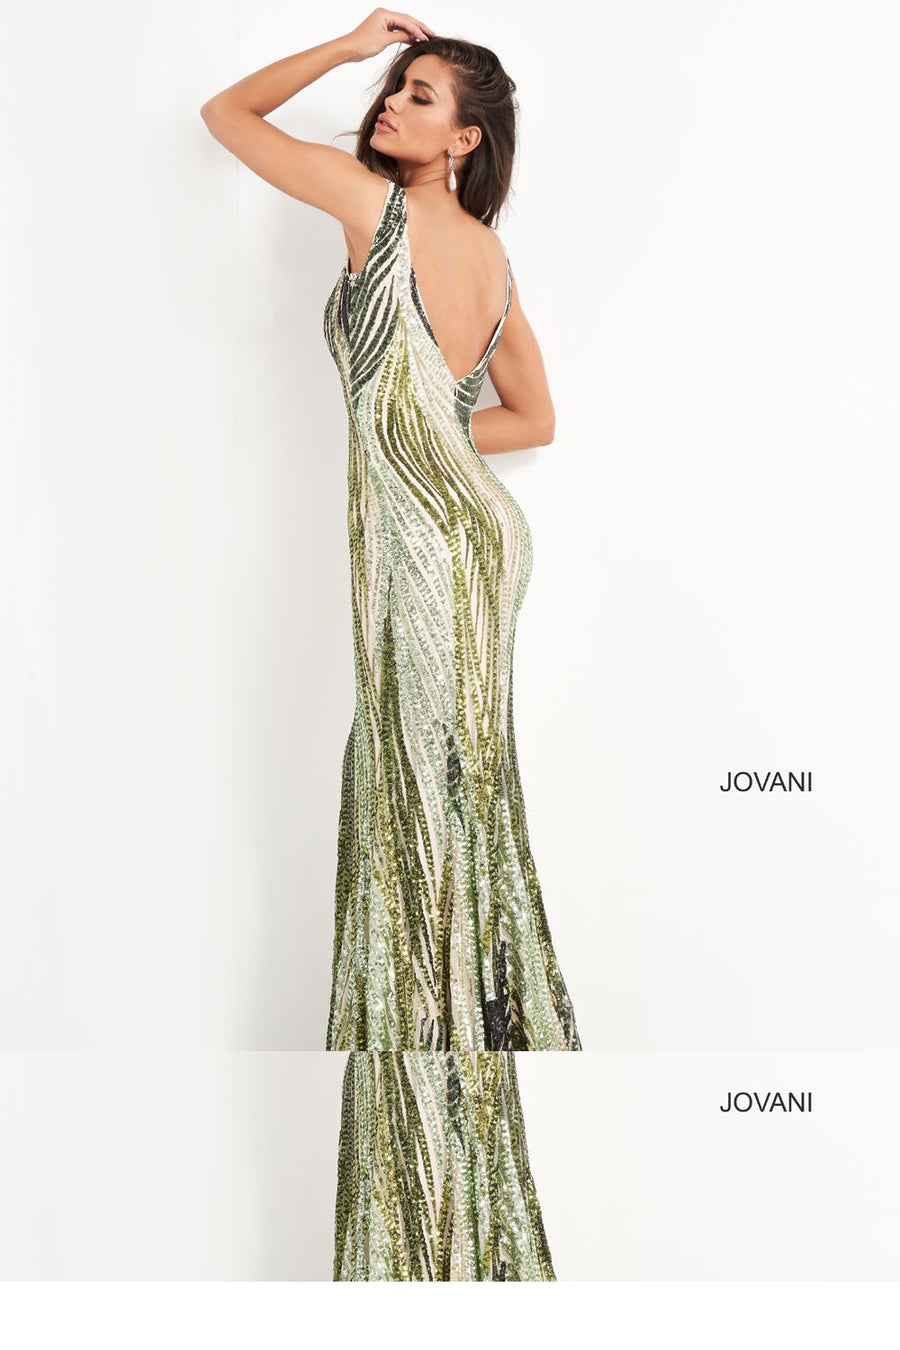 Jovani 05103 Dresses